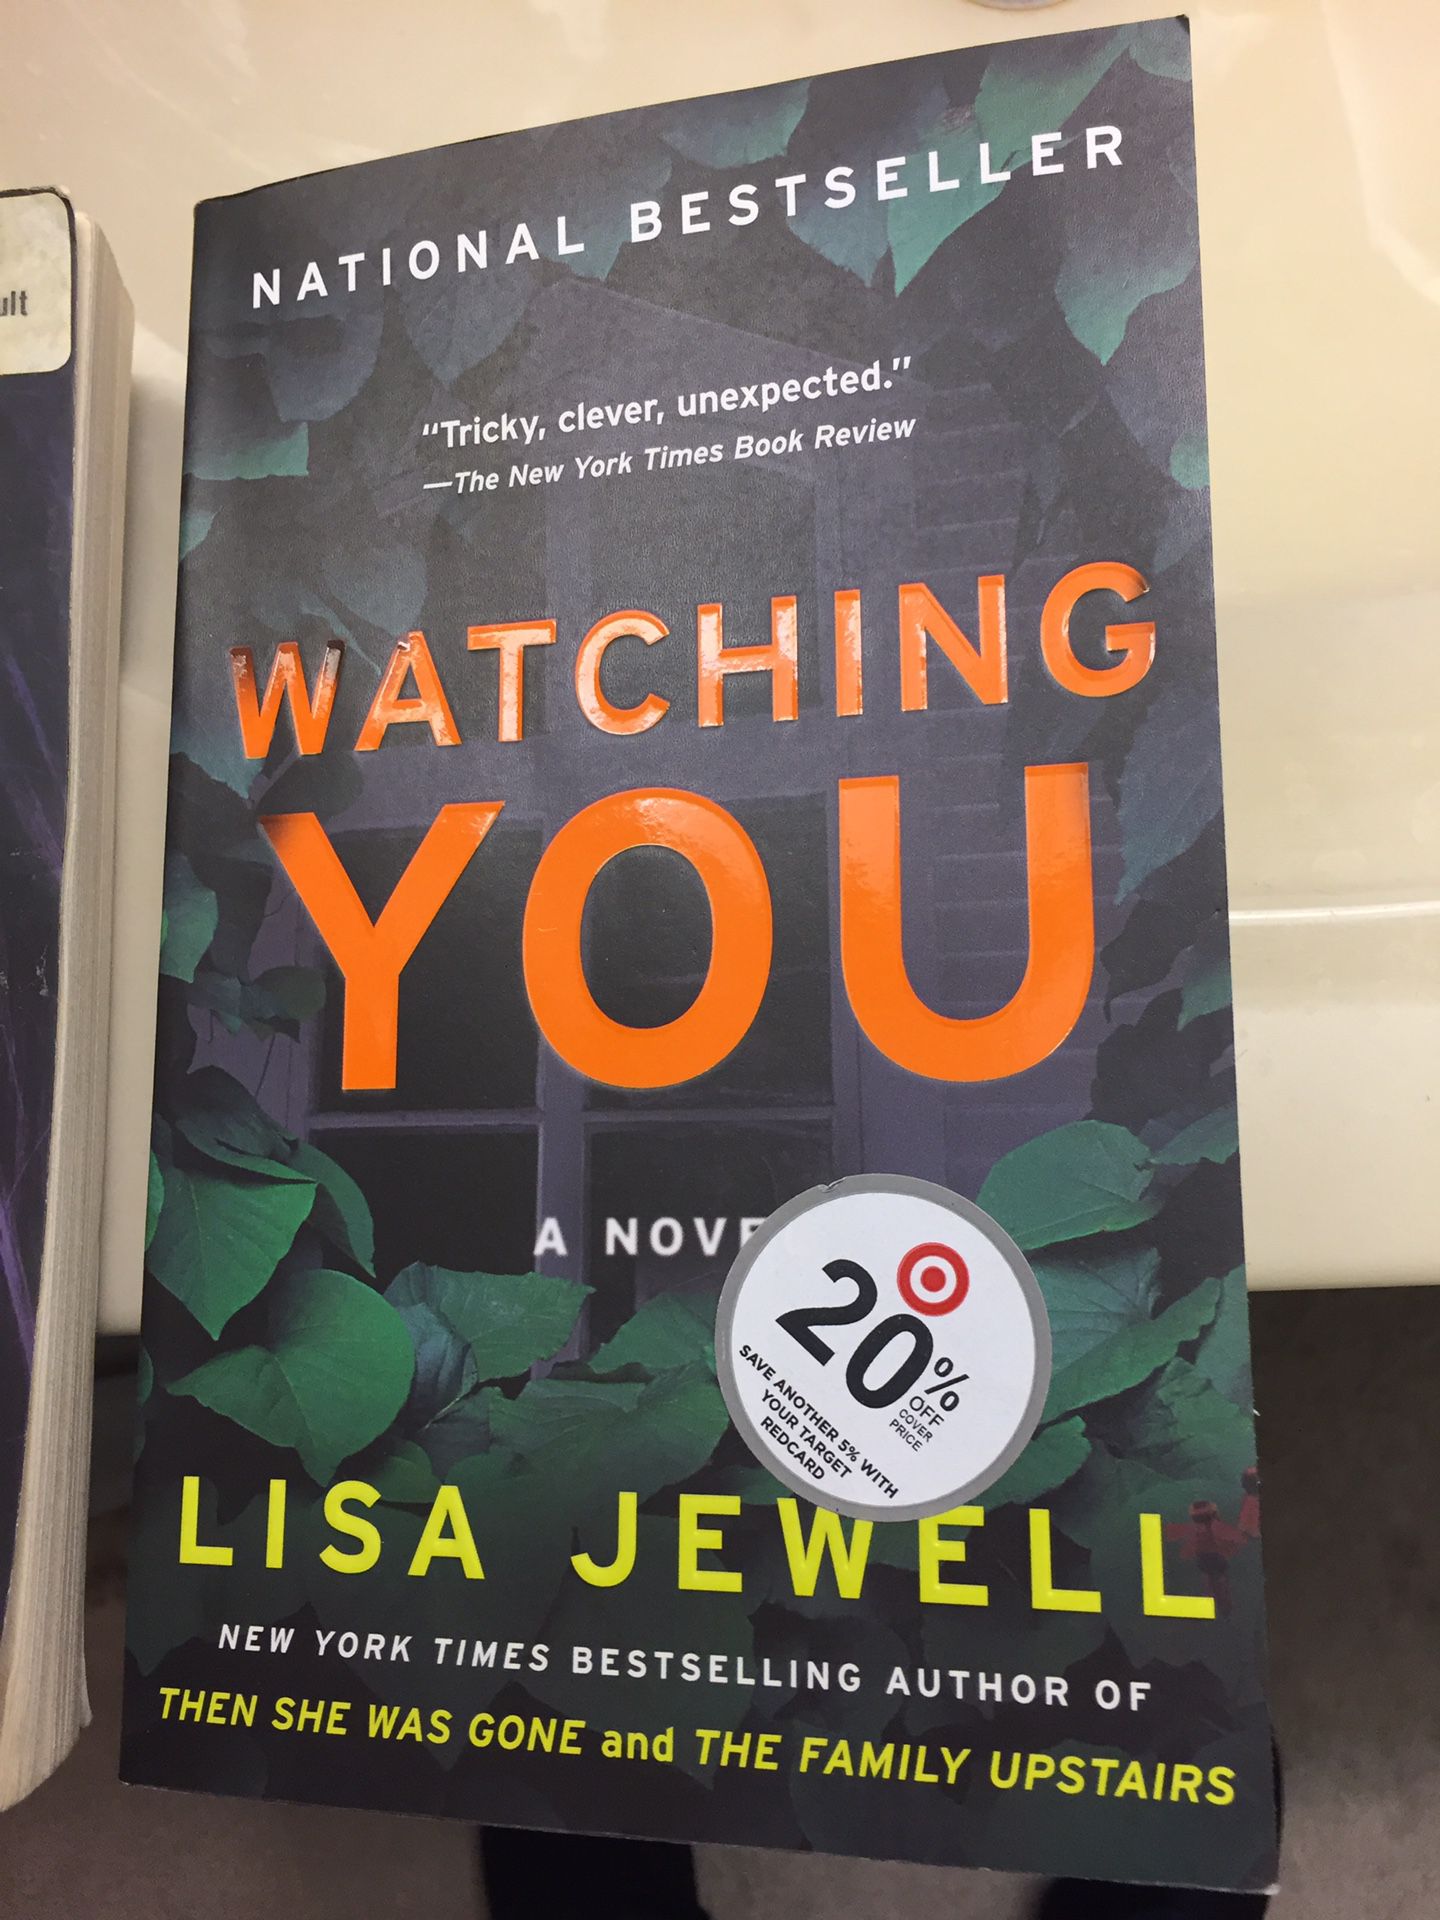 Watching You: A Novel